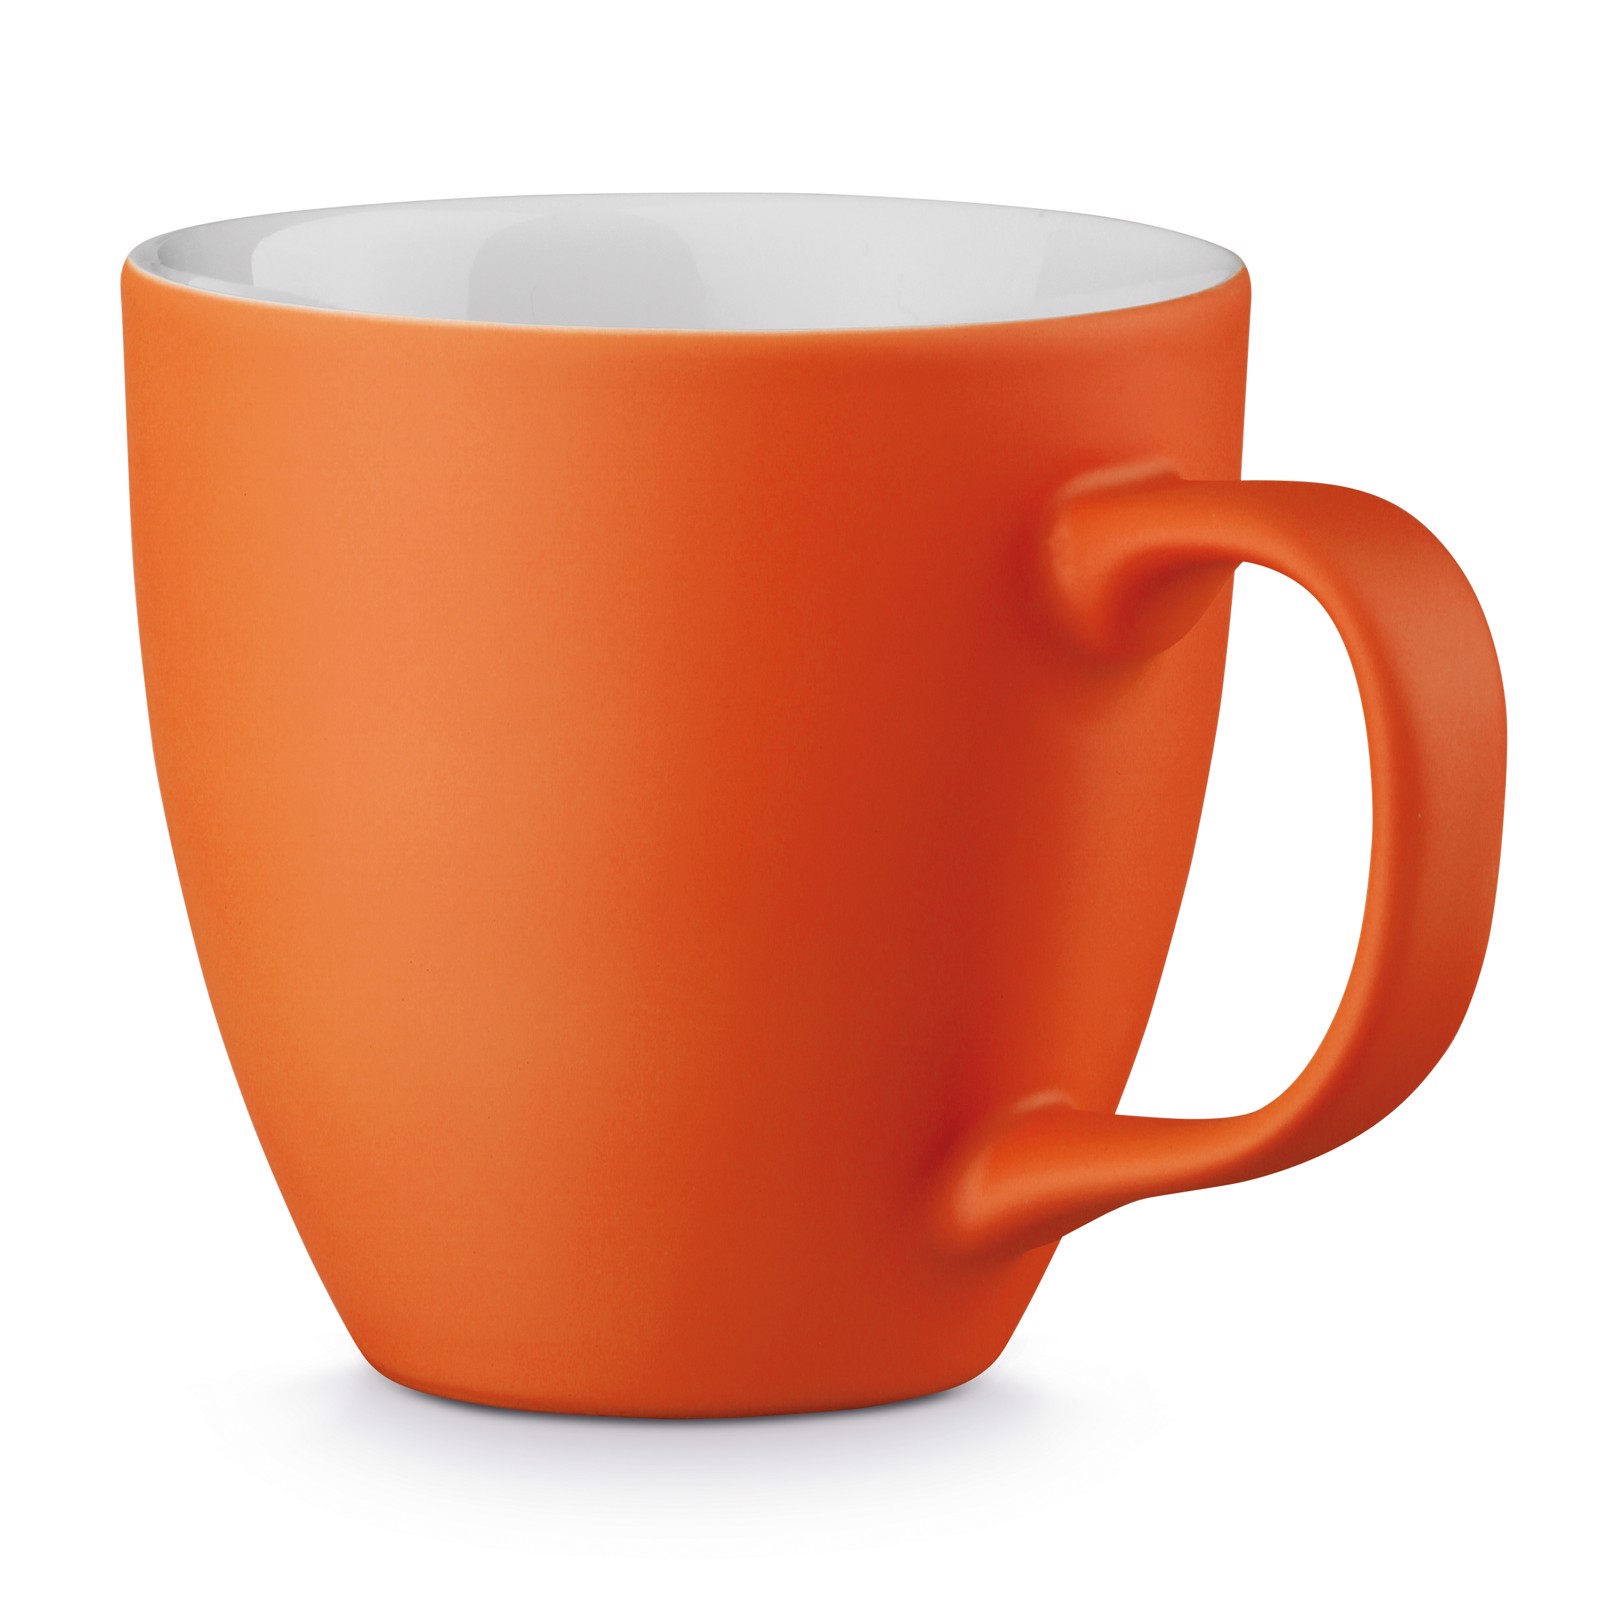 PANTHONY MAT. Porcelain mug 450 ml - Orange